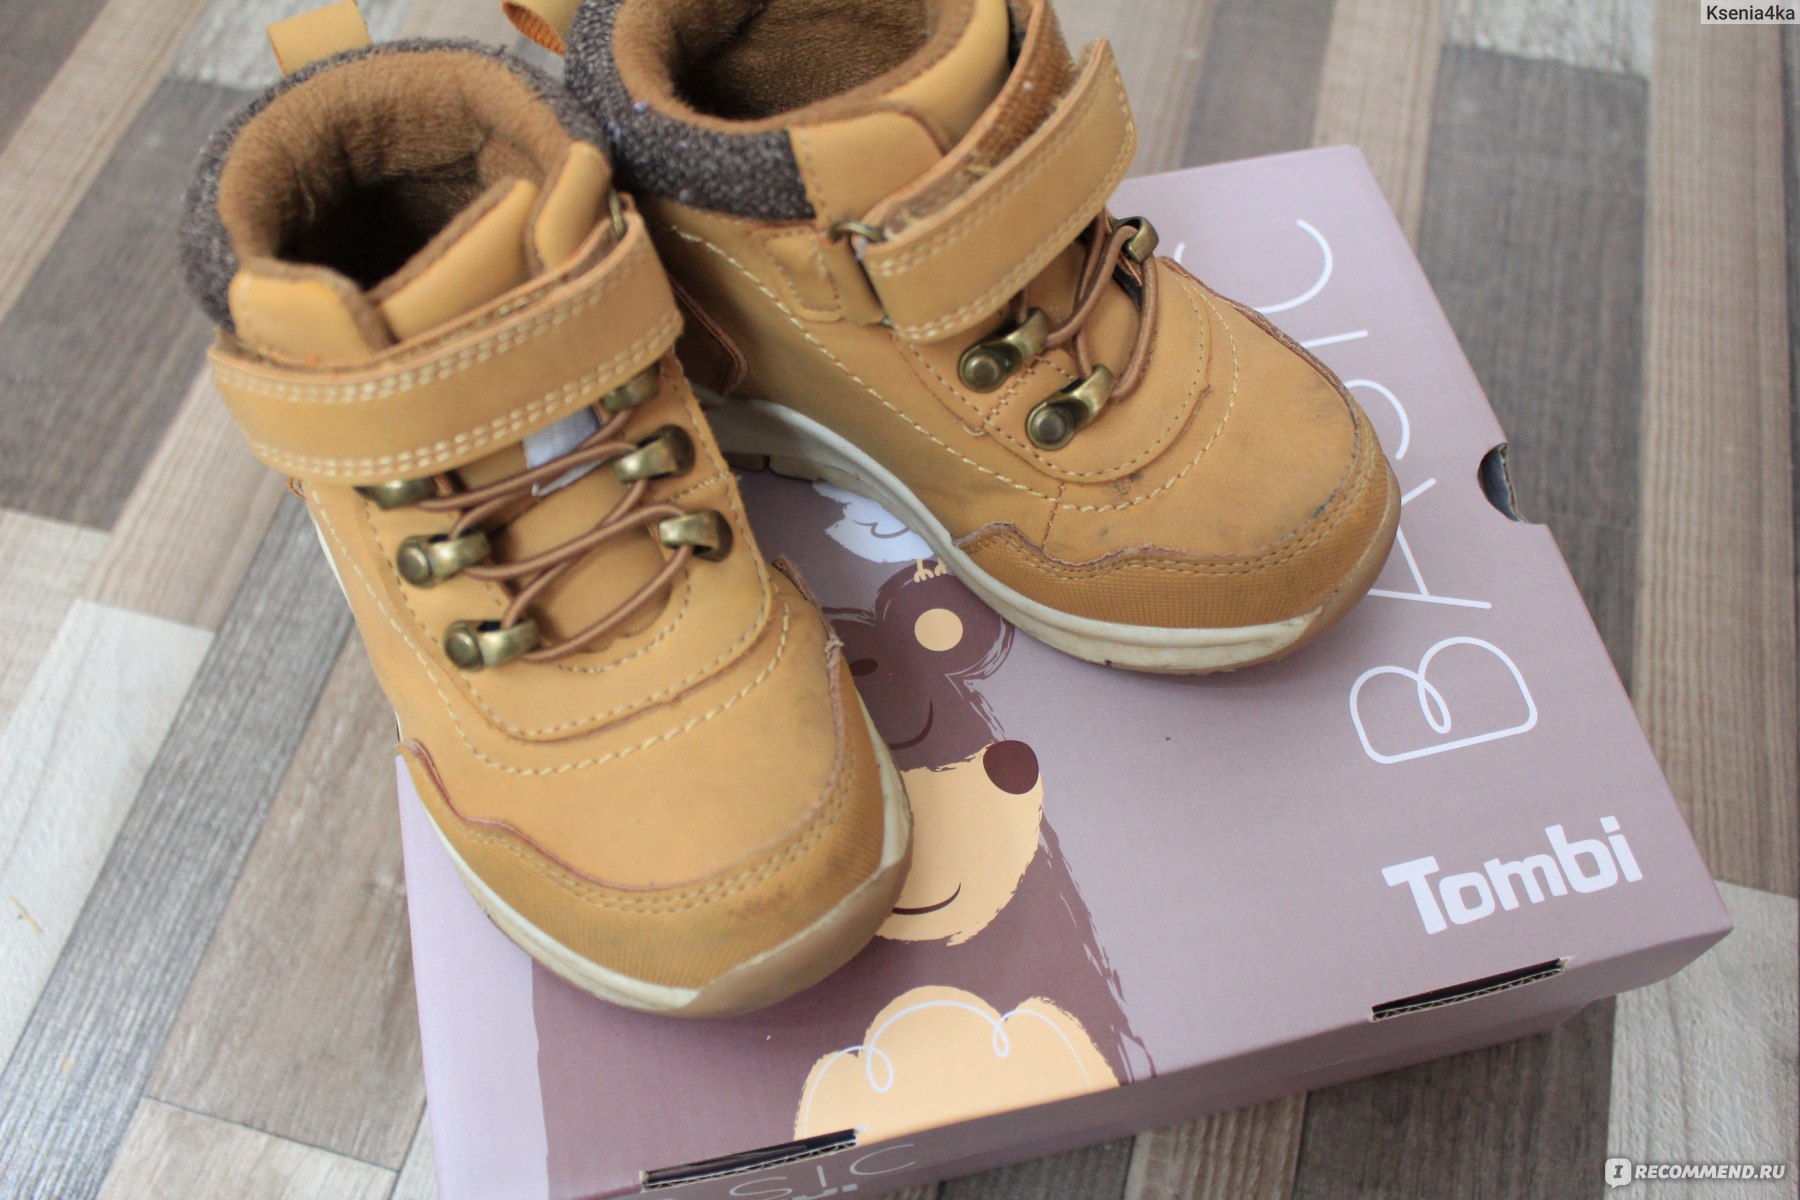 Как выбрать обувь для ребенка: первые ботиночки или сандалики